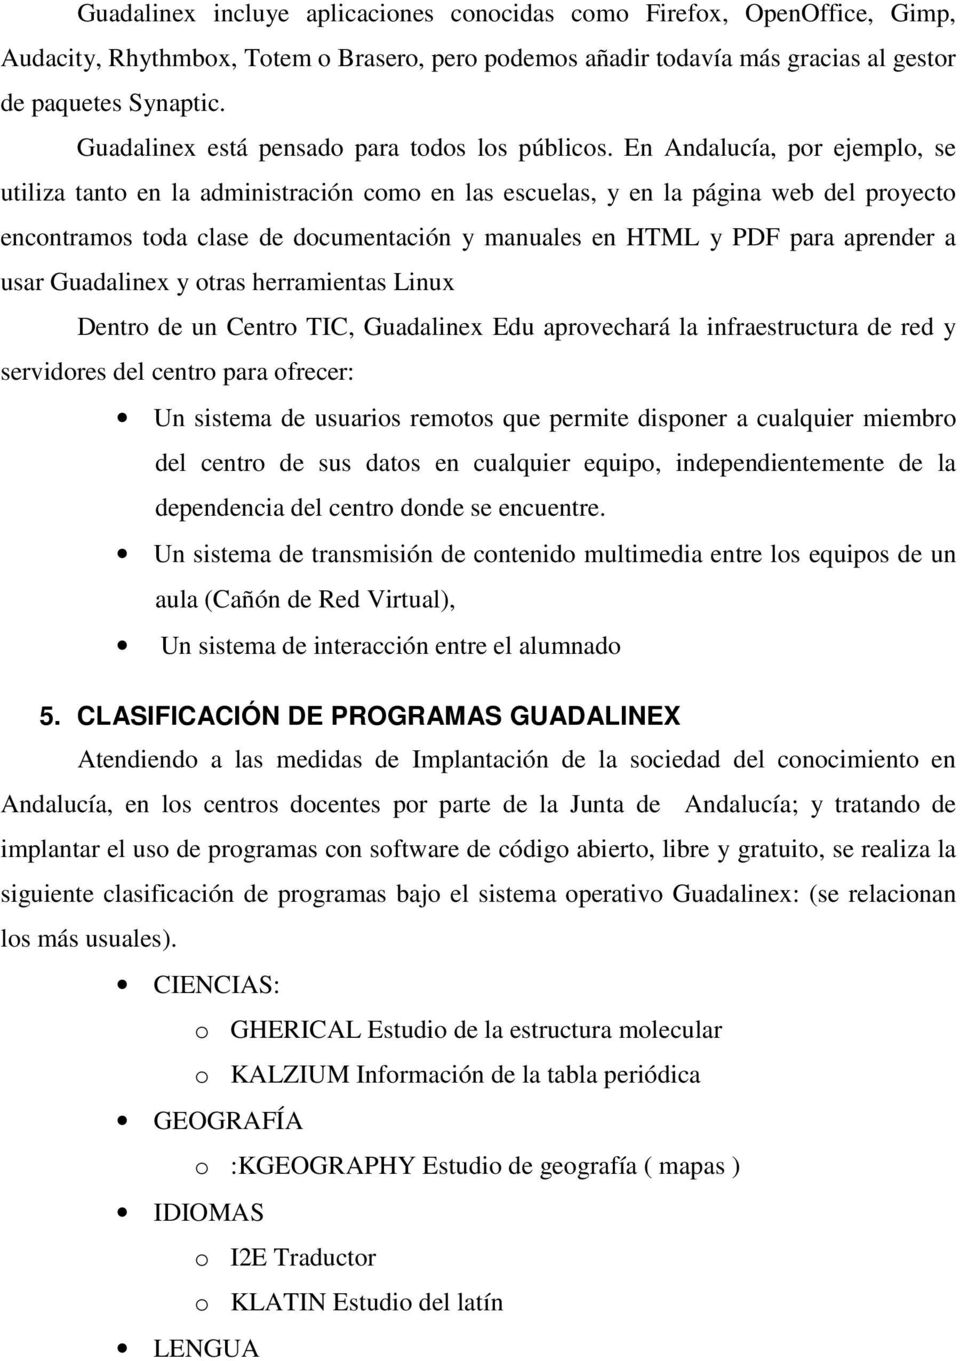 En Andalucía, por ejemplo, se utiliza tanto en la administración como en las escuelas, y en la página web del proyecto encontramos toda clase de documentación y manuales en HTML y PDF para aprender a